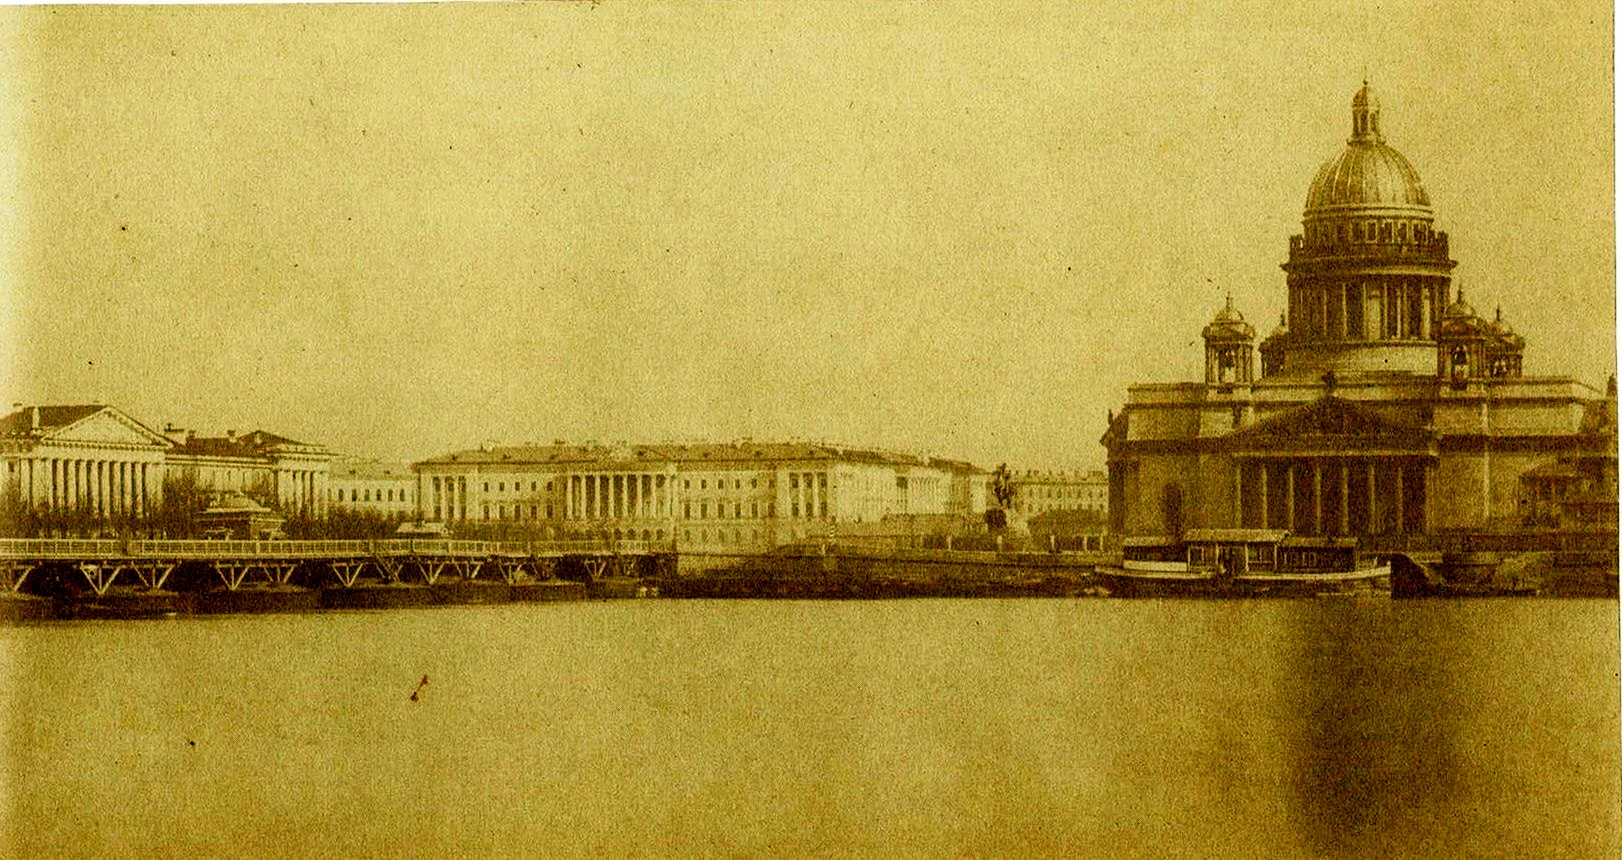 Исаакиевский мост в Санкт-Петербурге 19 век